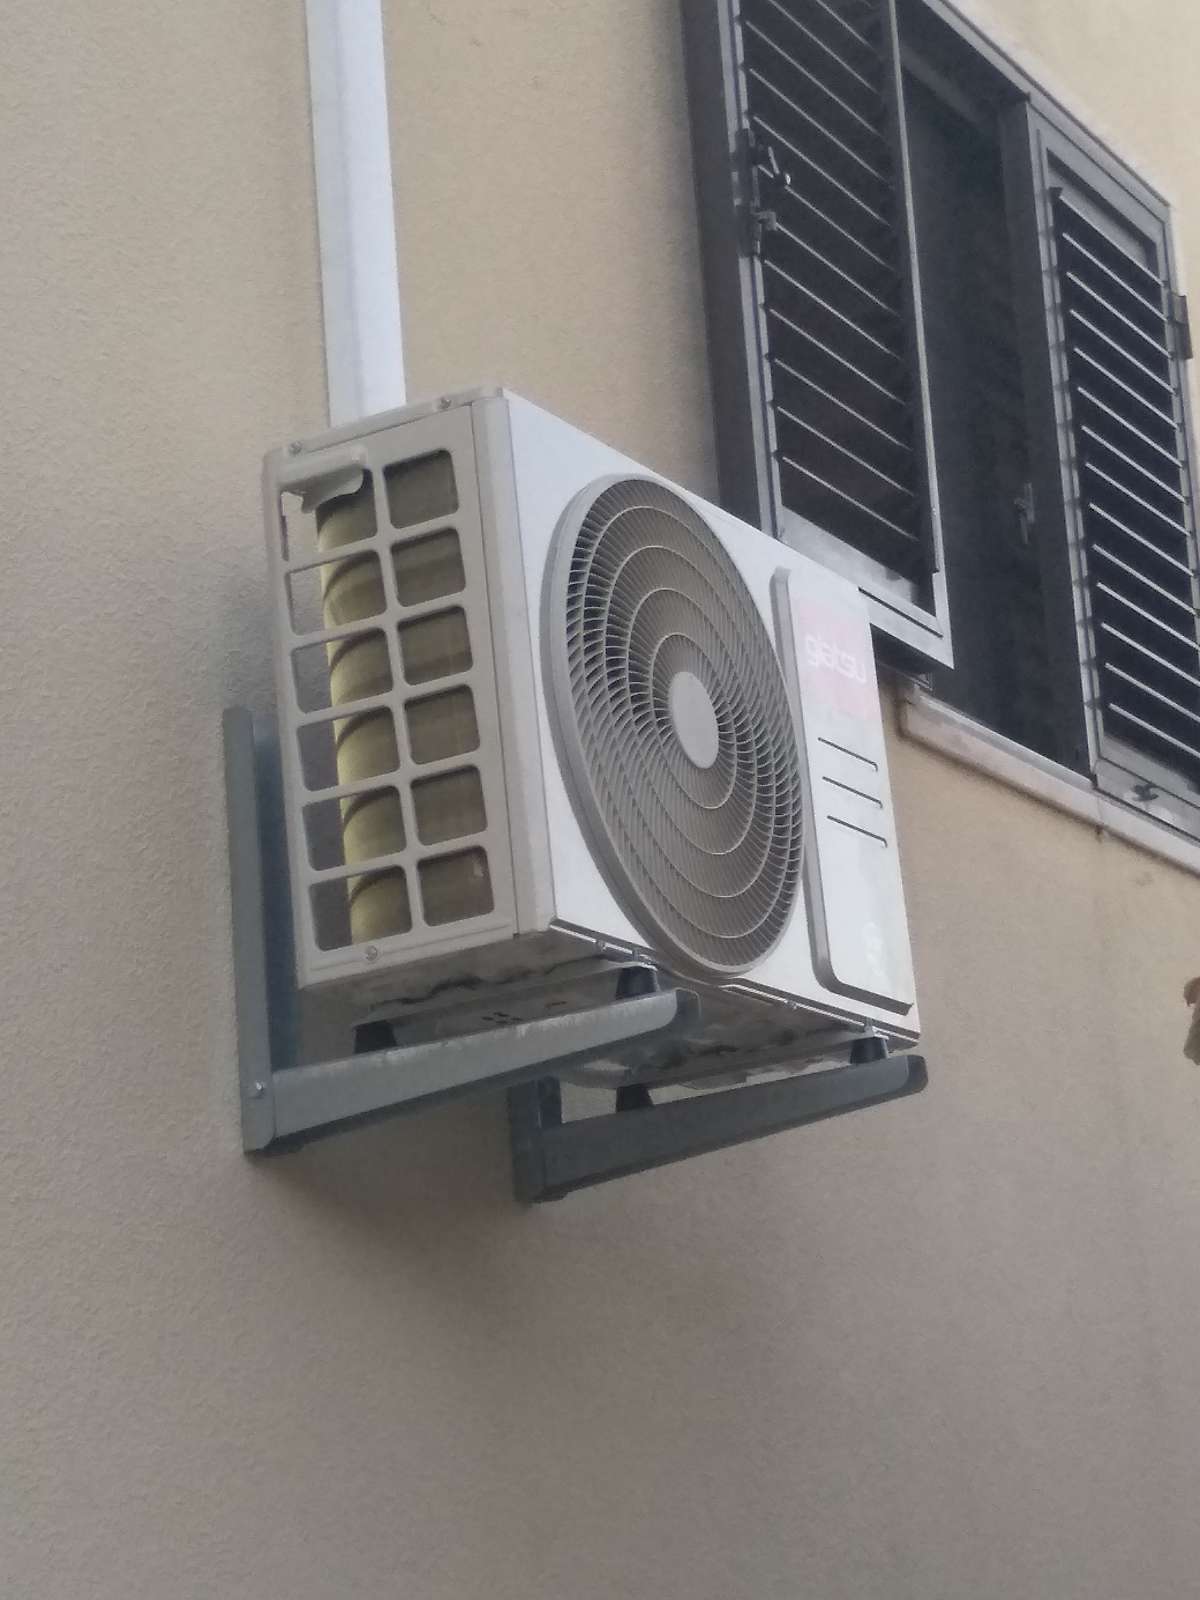 Reparação de Ar Condicionado